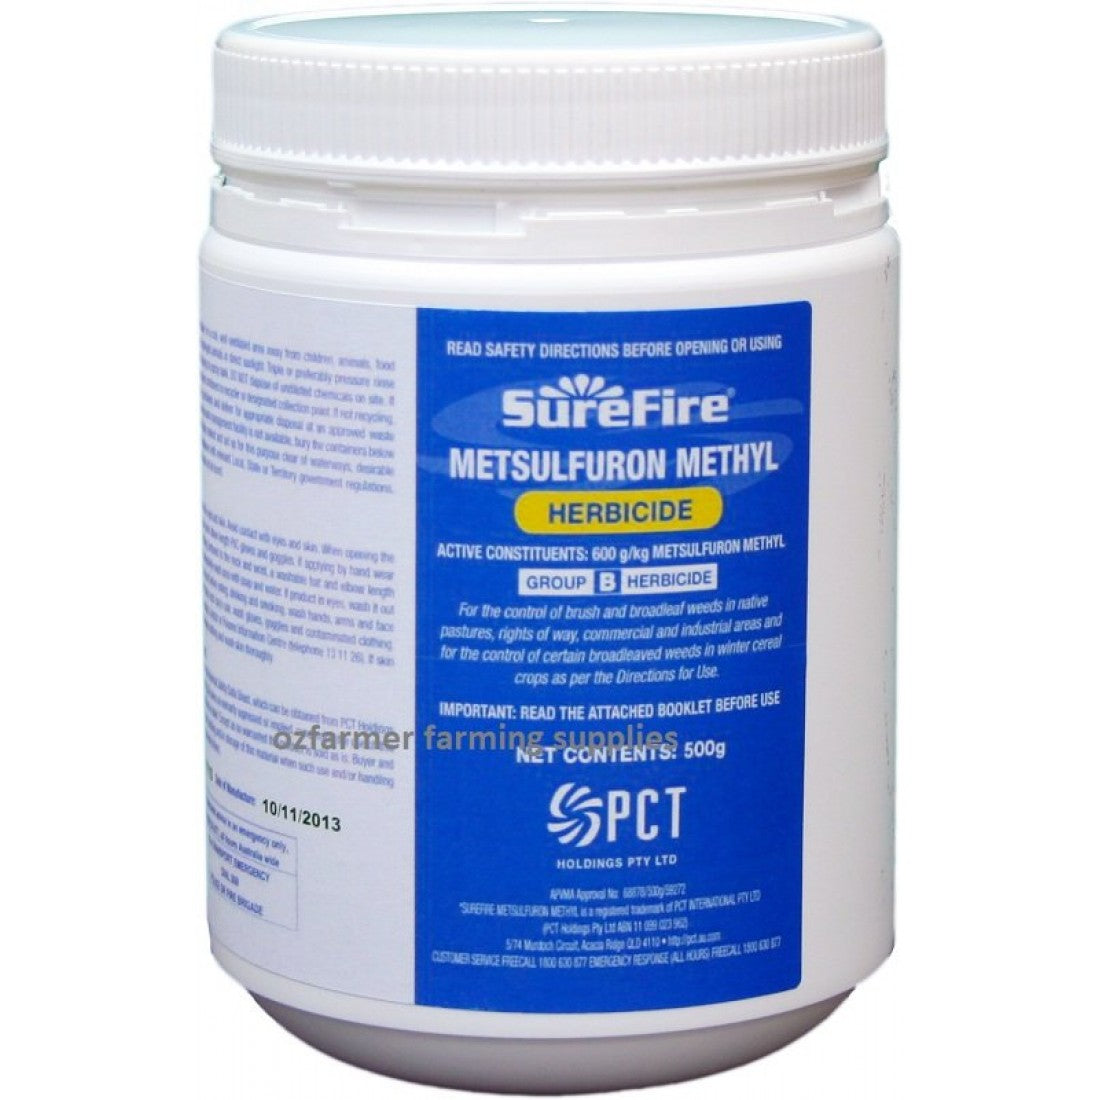 Surefire Metsulfuron Methyl Herbicide - 600g/kg Metsulfuron Methyl